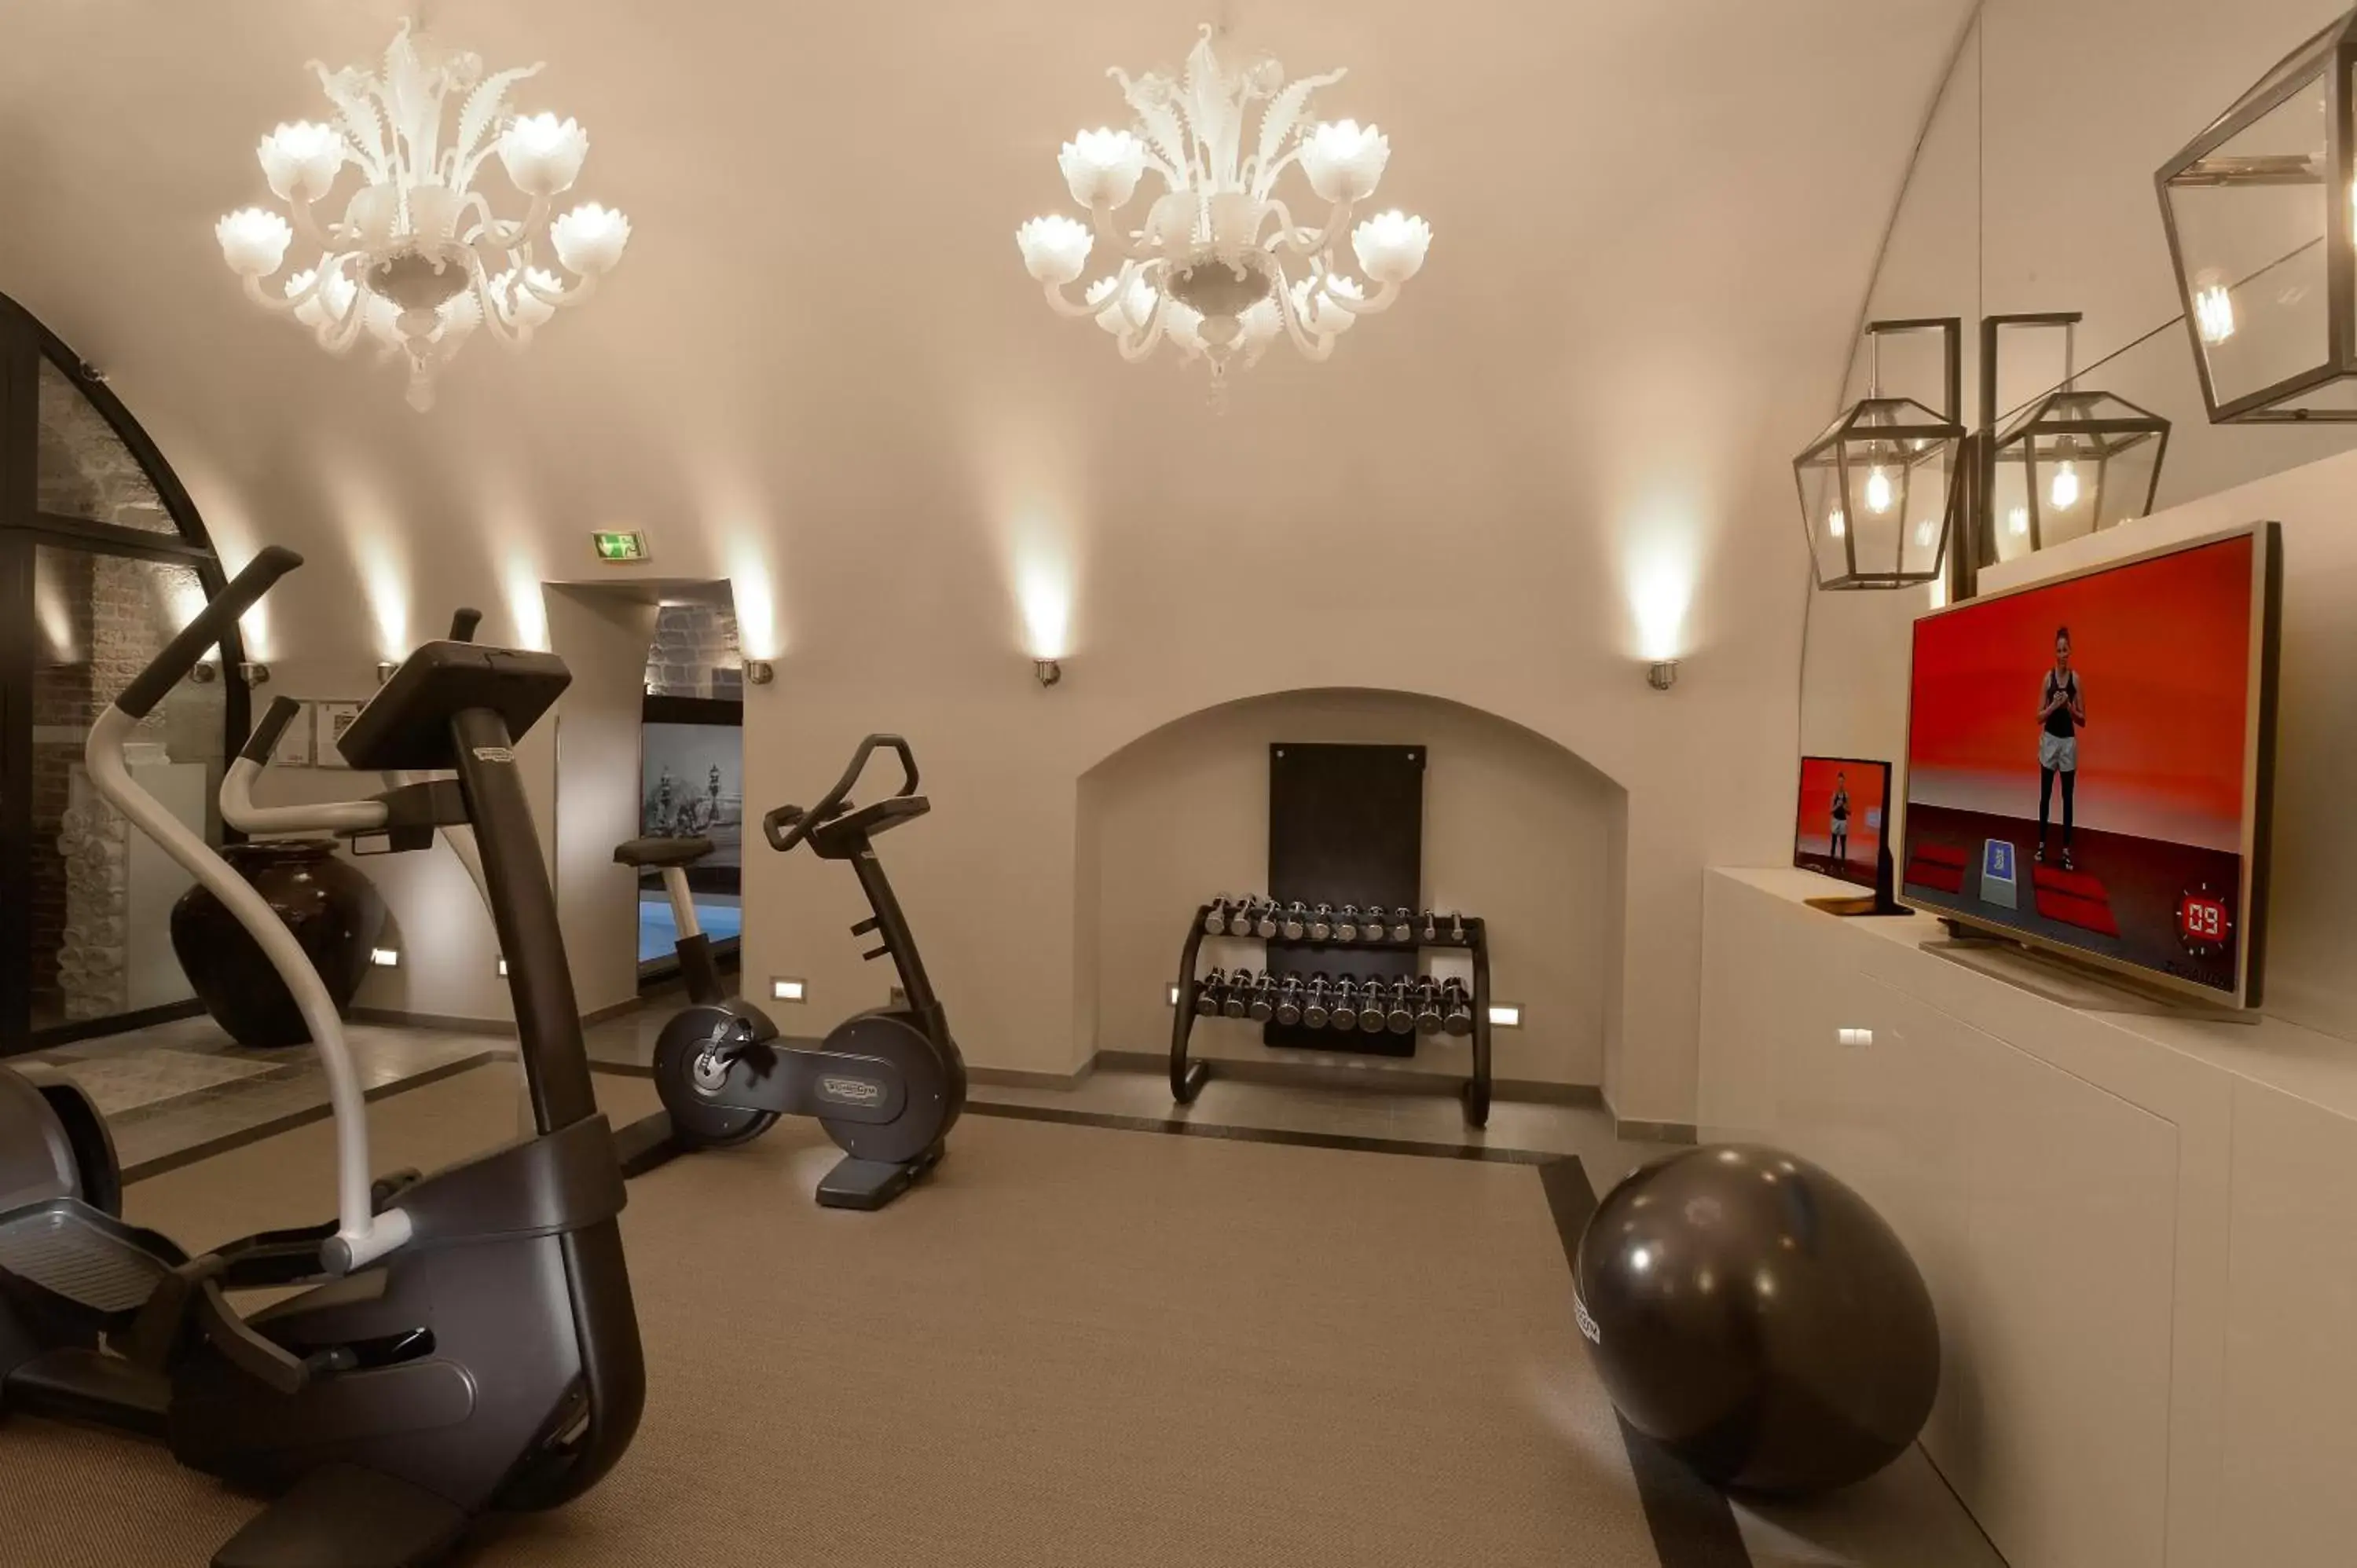 Fitness centre/facilities, Fitness Center/Facilities in Hotel La Lanterne & Spa